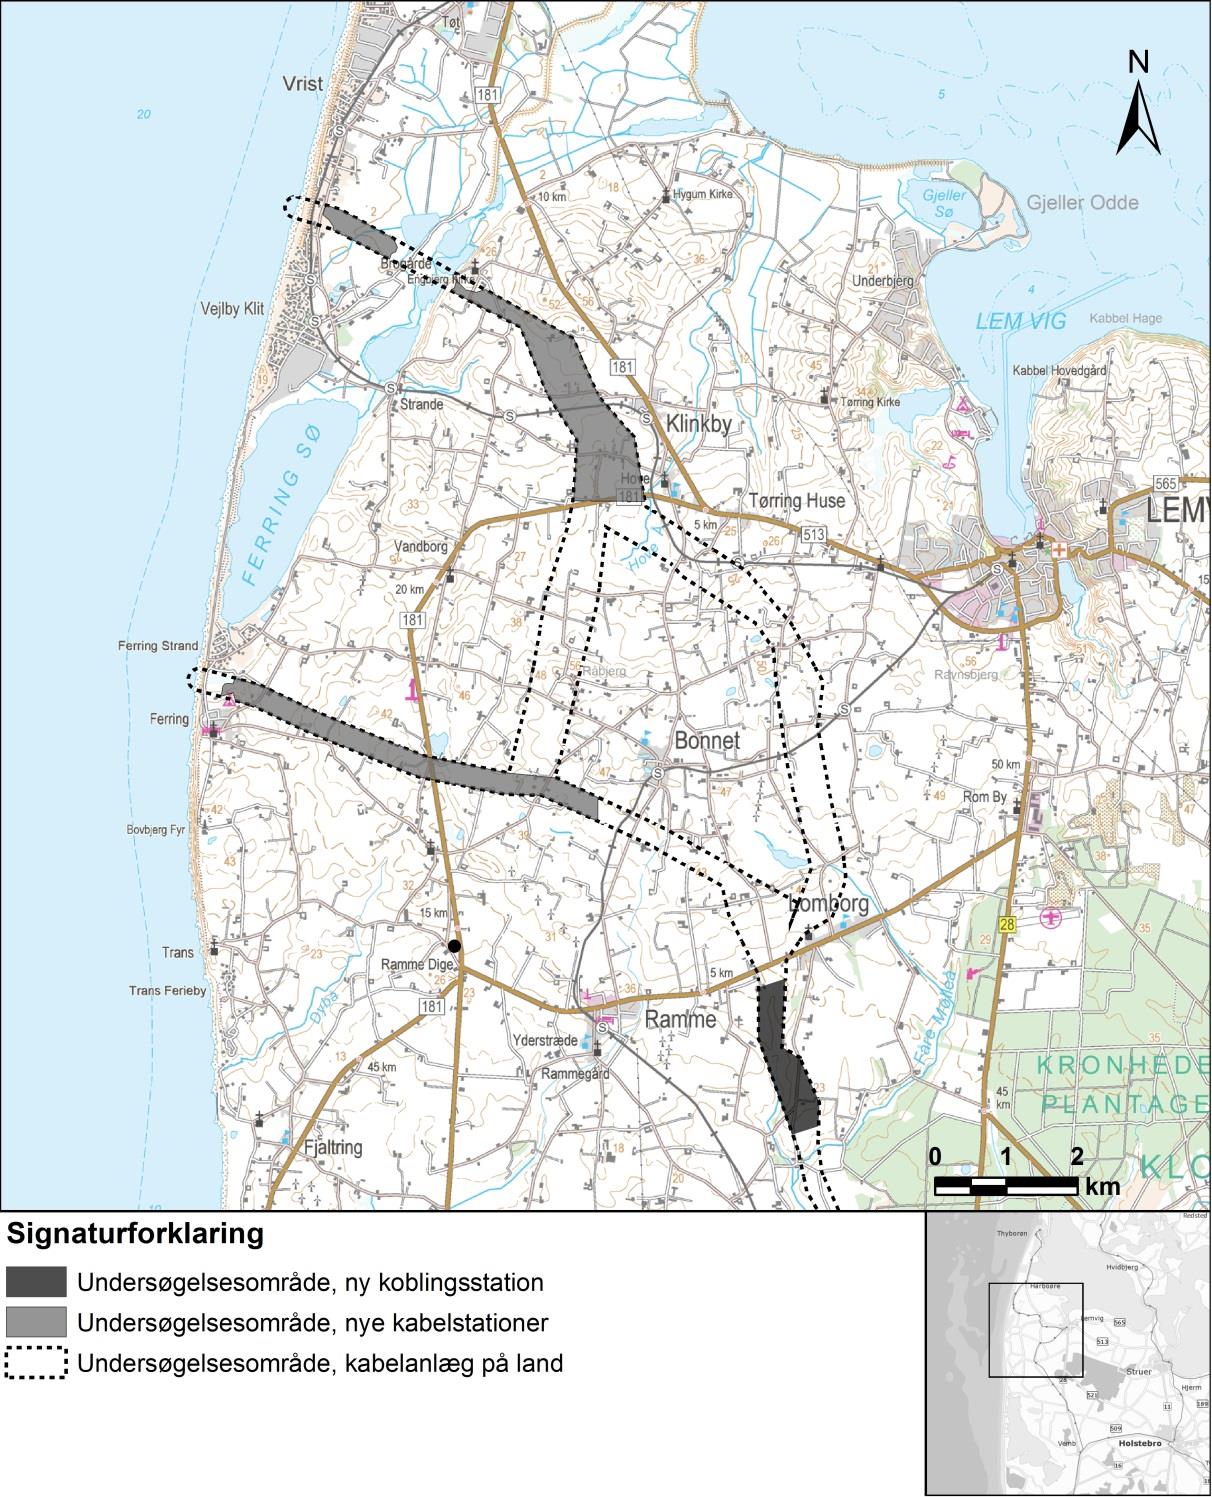 Herudover skal der etabler etableres en ny koblingsstation (knudepunkt) mellem Ramme og Lomborg.